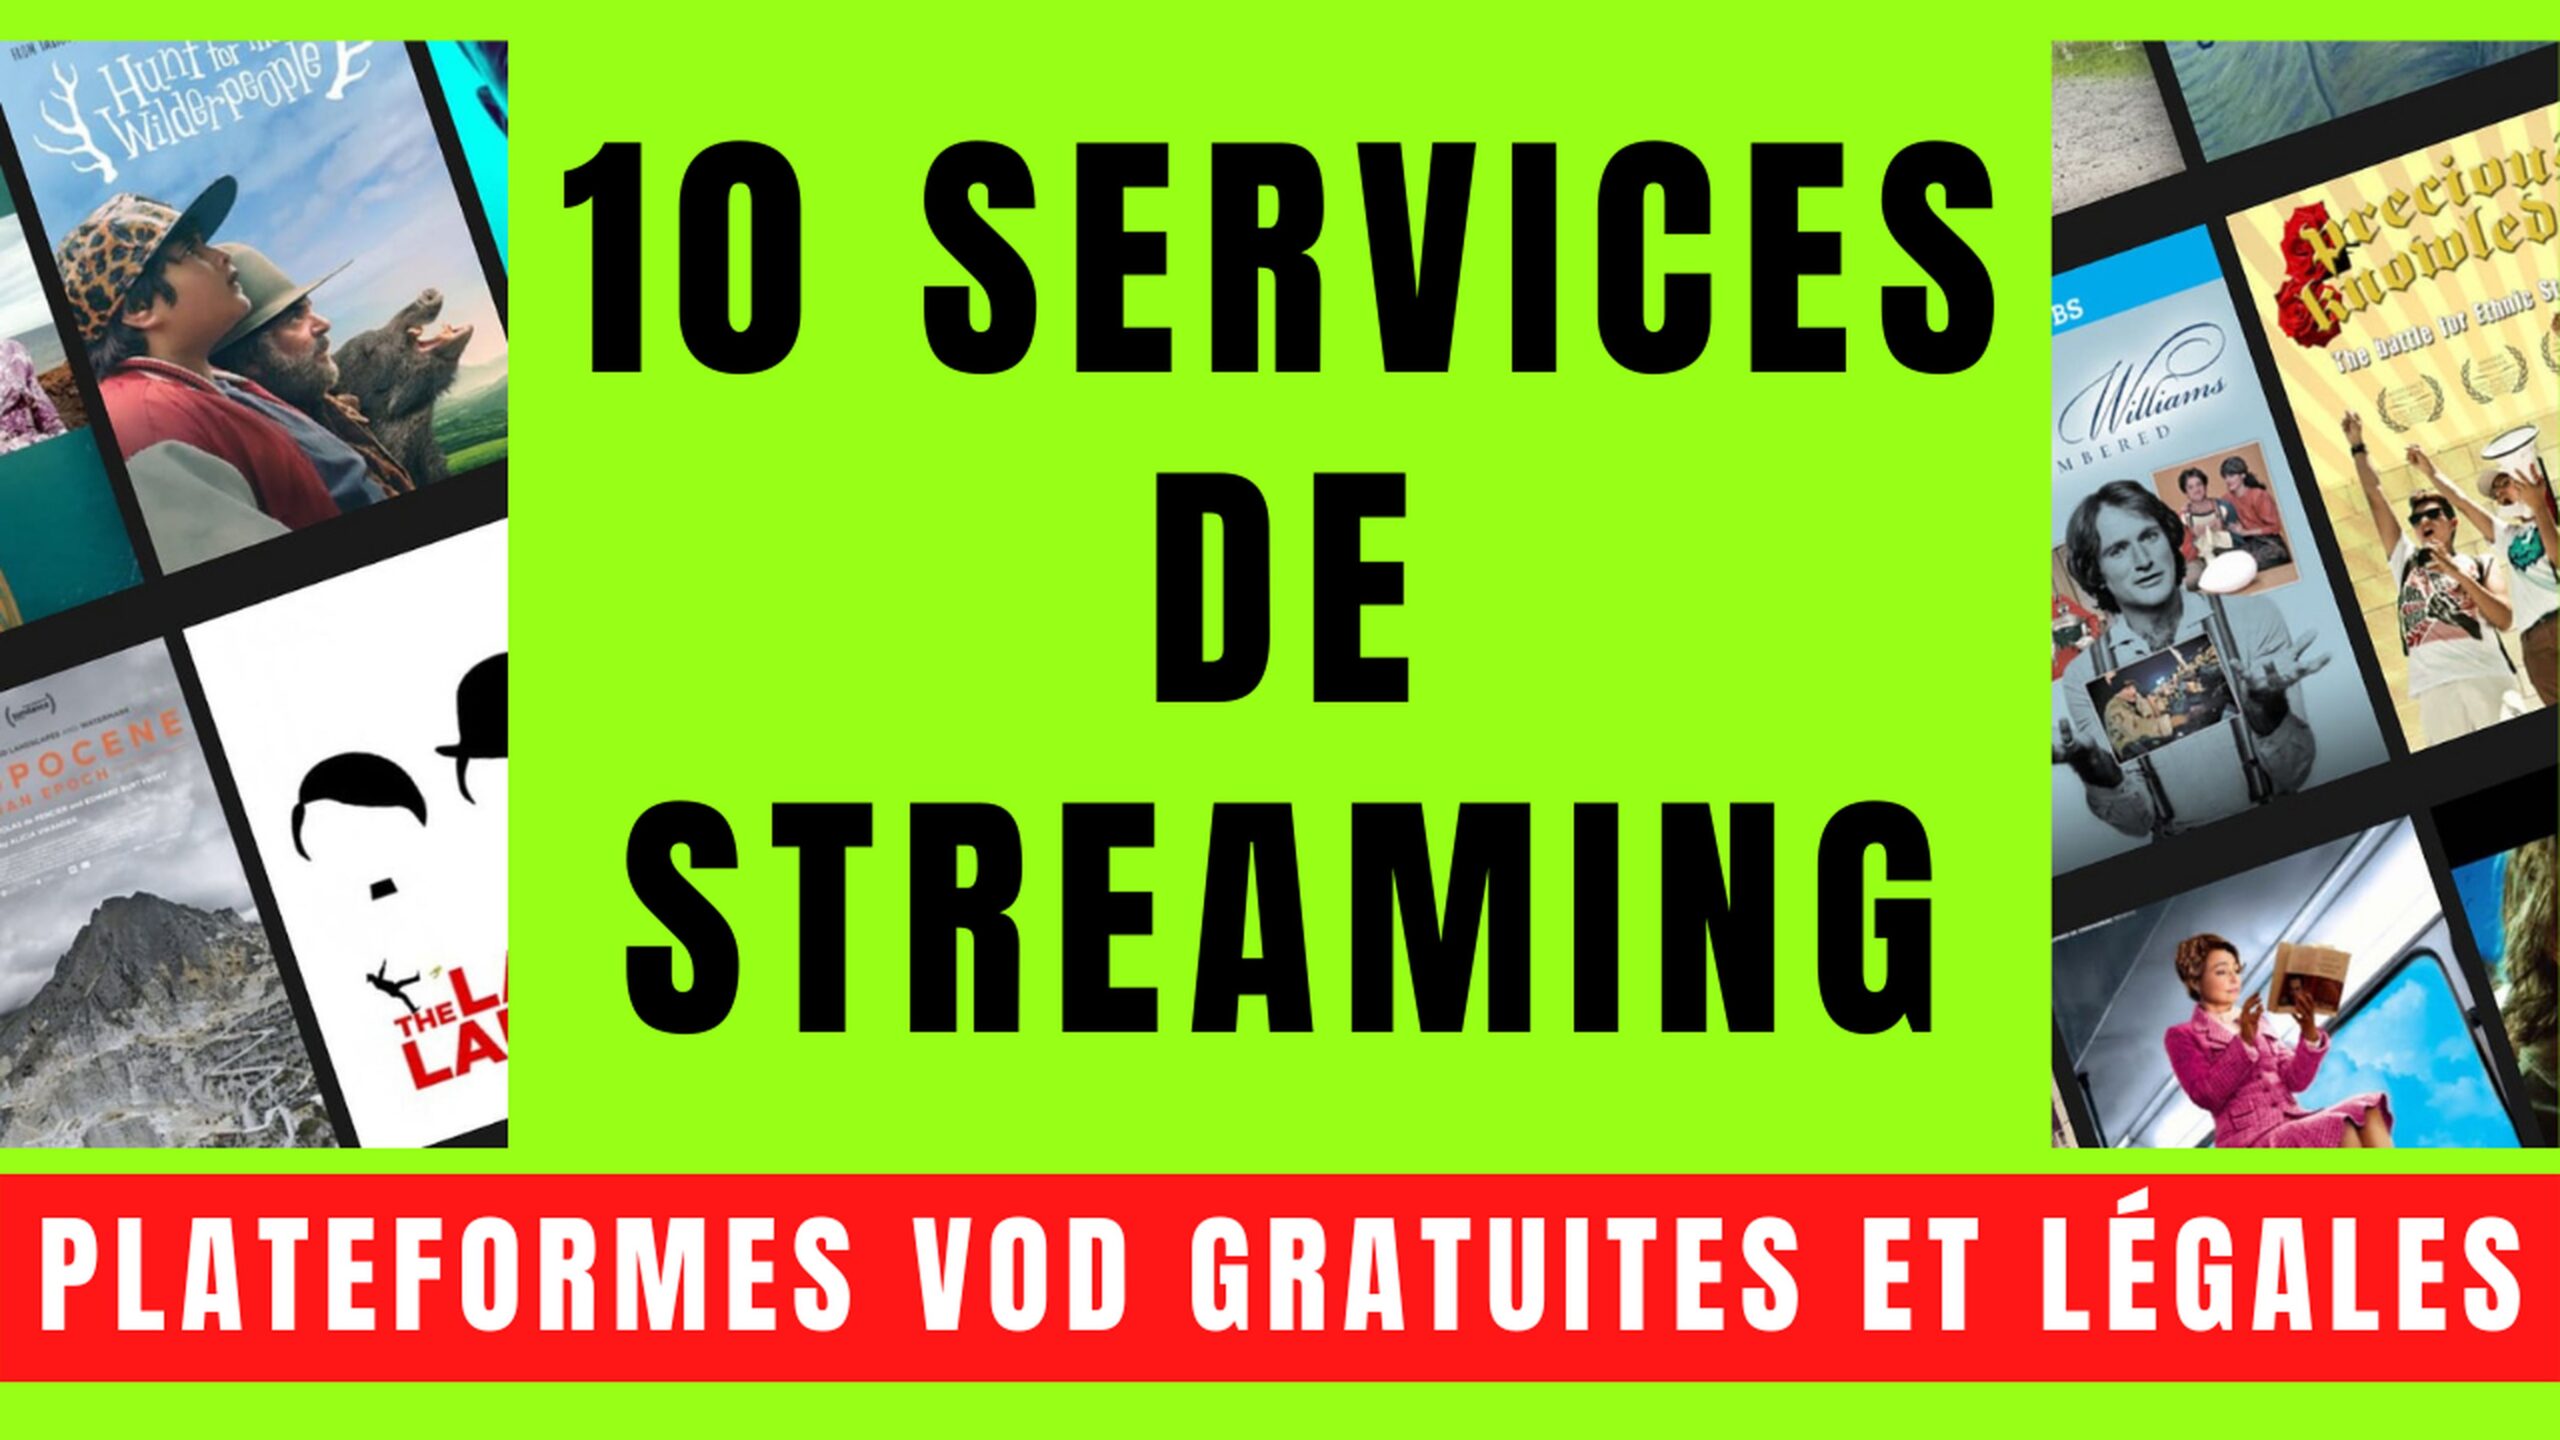 10 SERVICES VOD avec STREAMING GRATUIT et LÉGAL 8